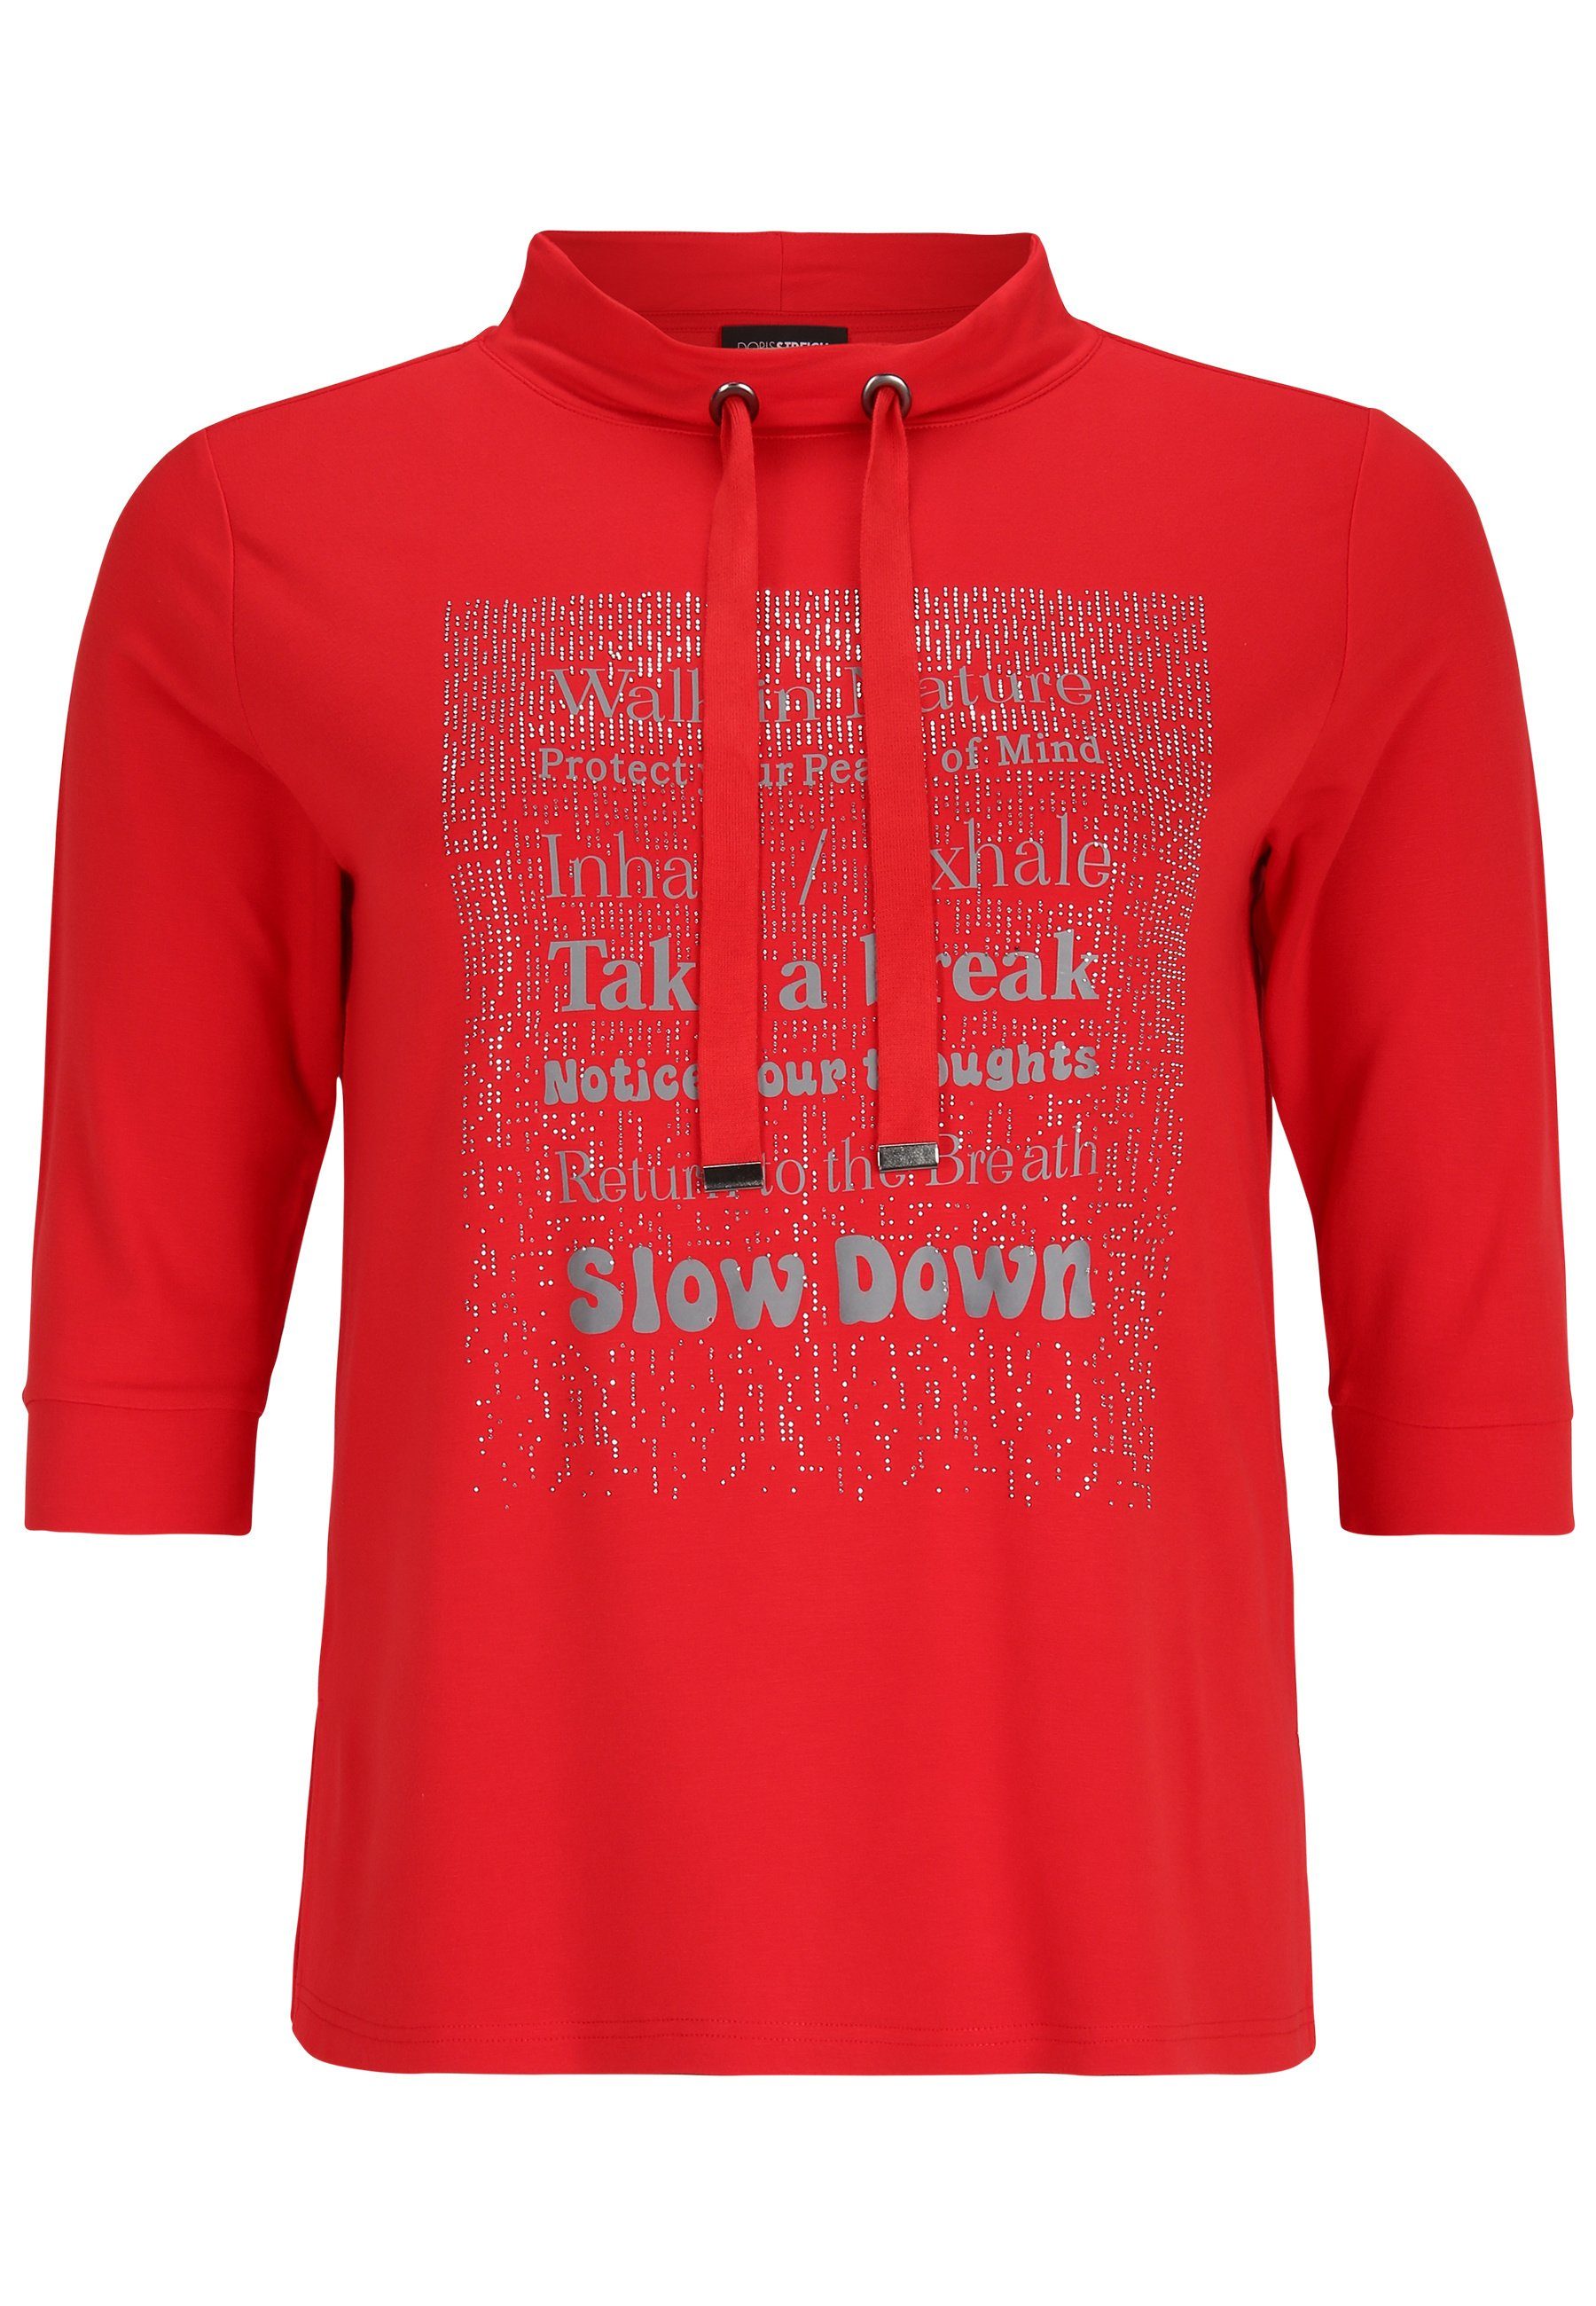 Doris Streich Print-Shirt Sweatshirt mit Glitzer-Motiv rot